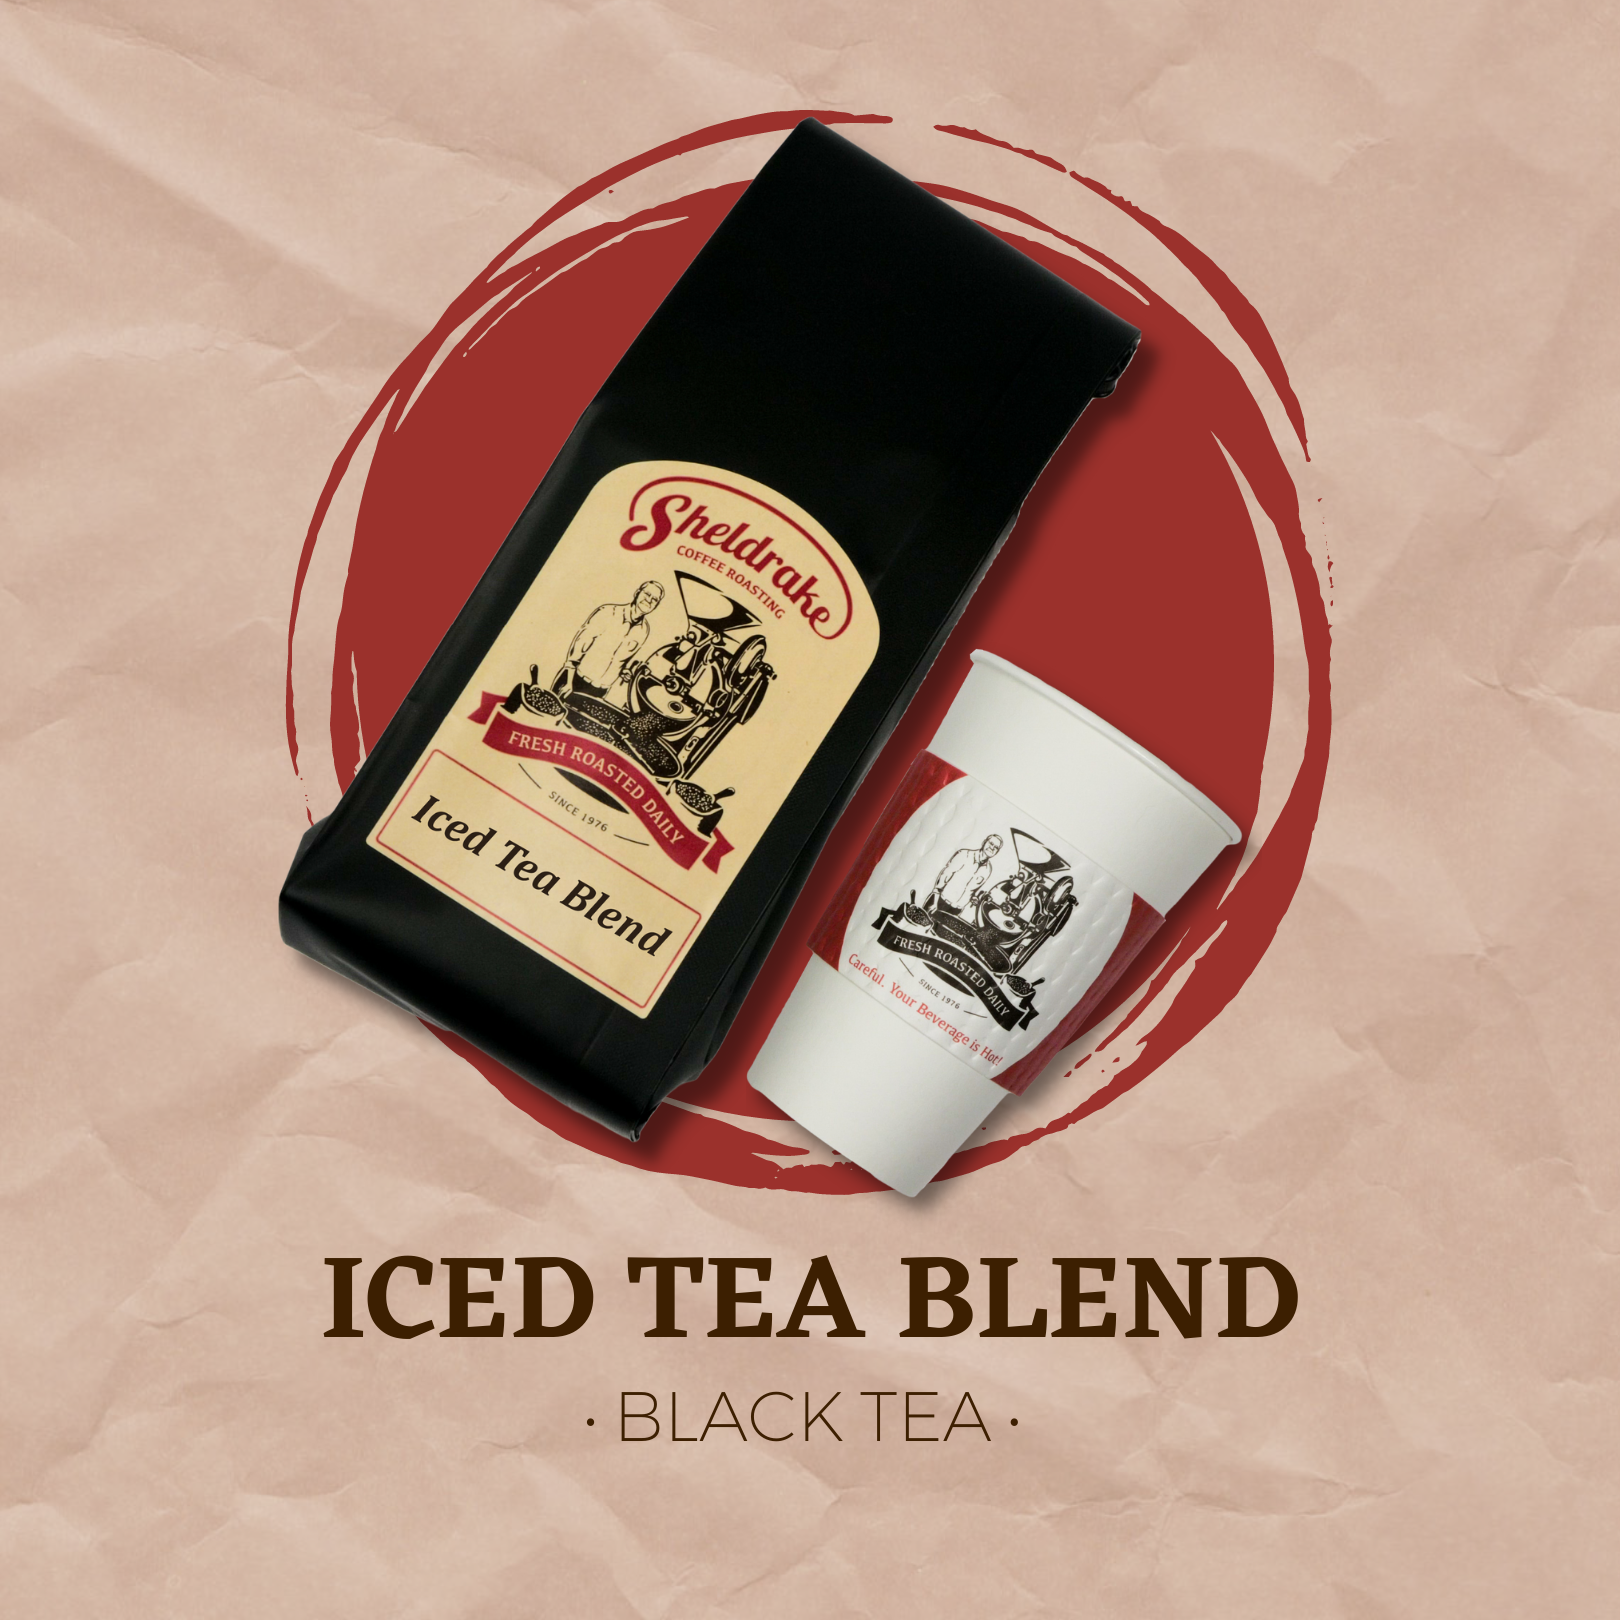 Iced Tea Blend